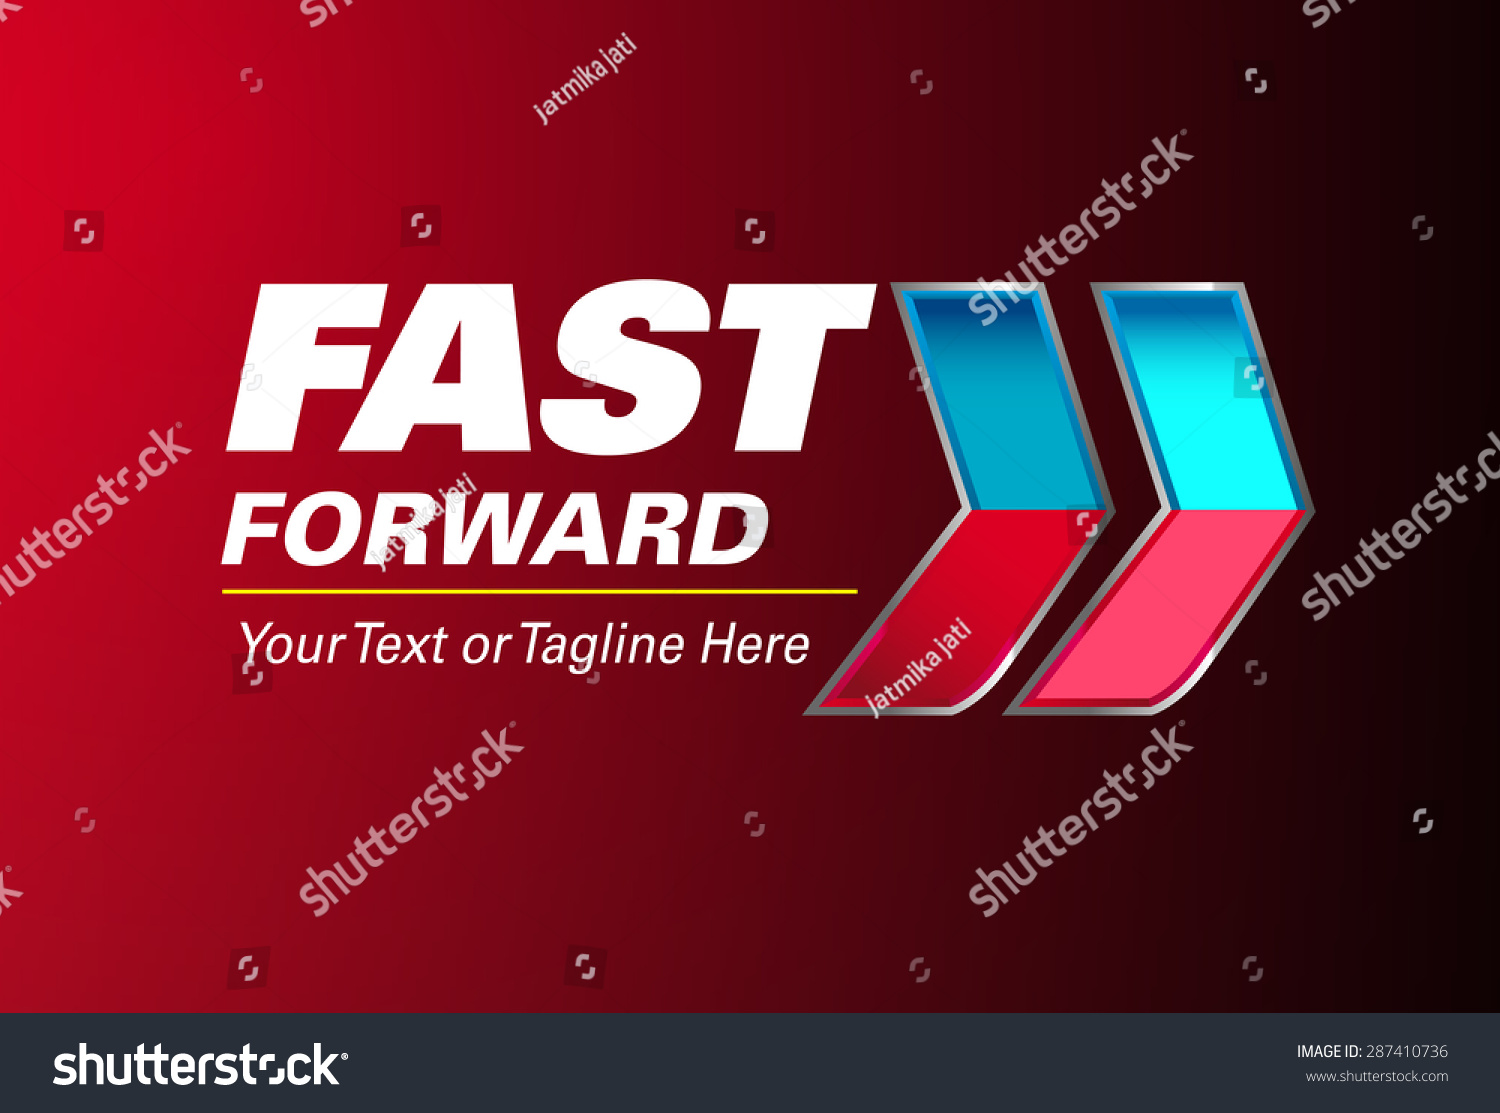 Fast Forward Logo เวกเตอร์สต็อก ปลอดค่าลิขสิทธิ์ 287410736